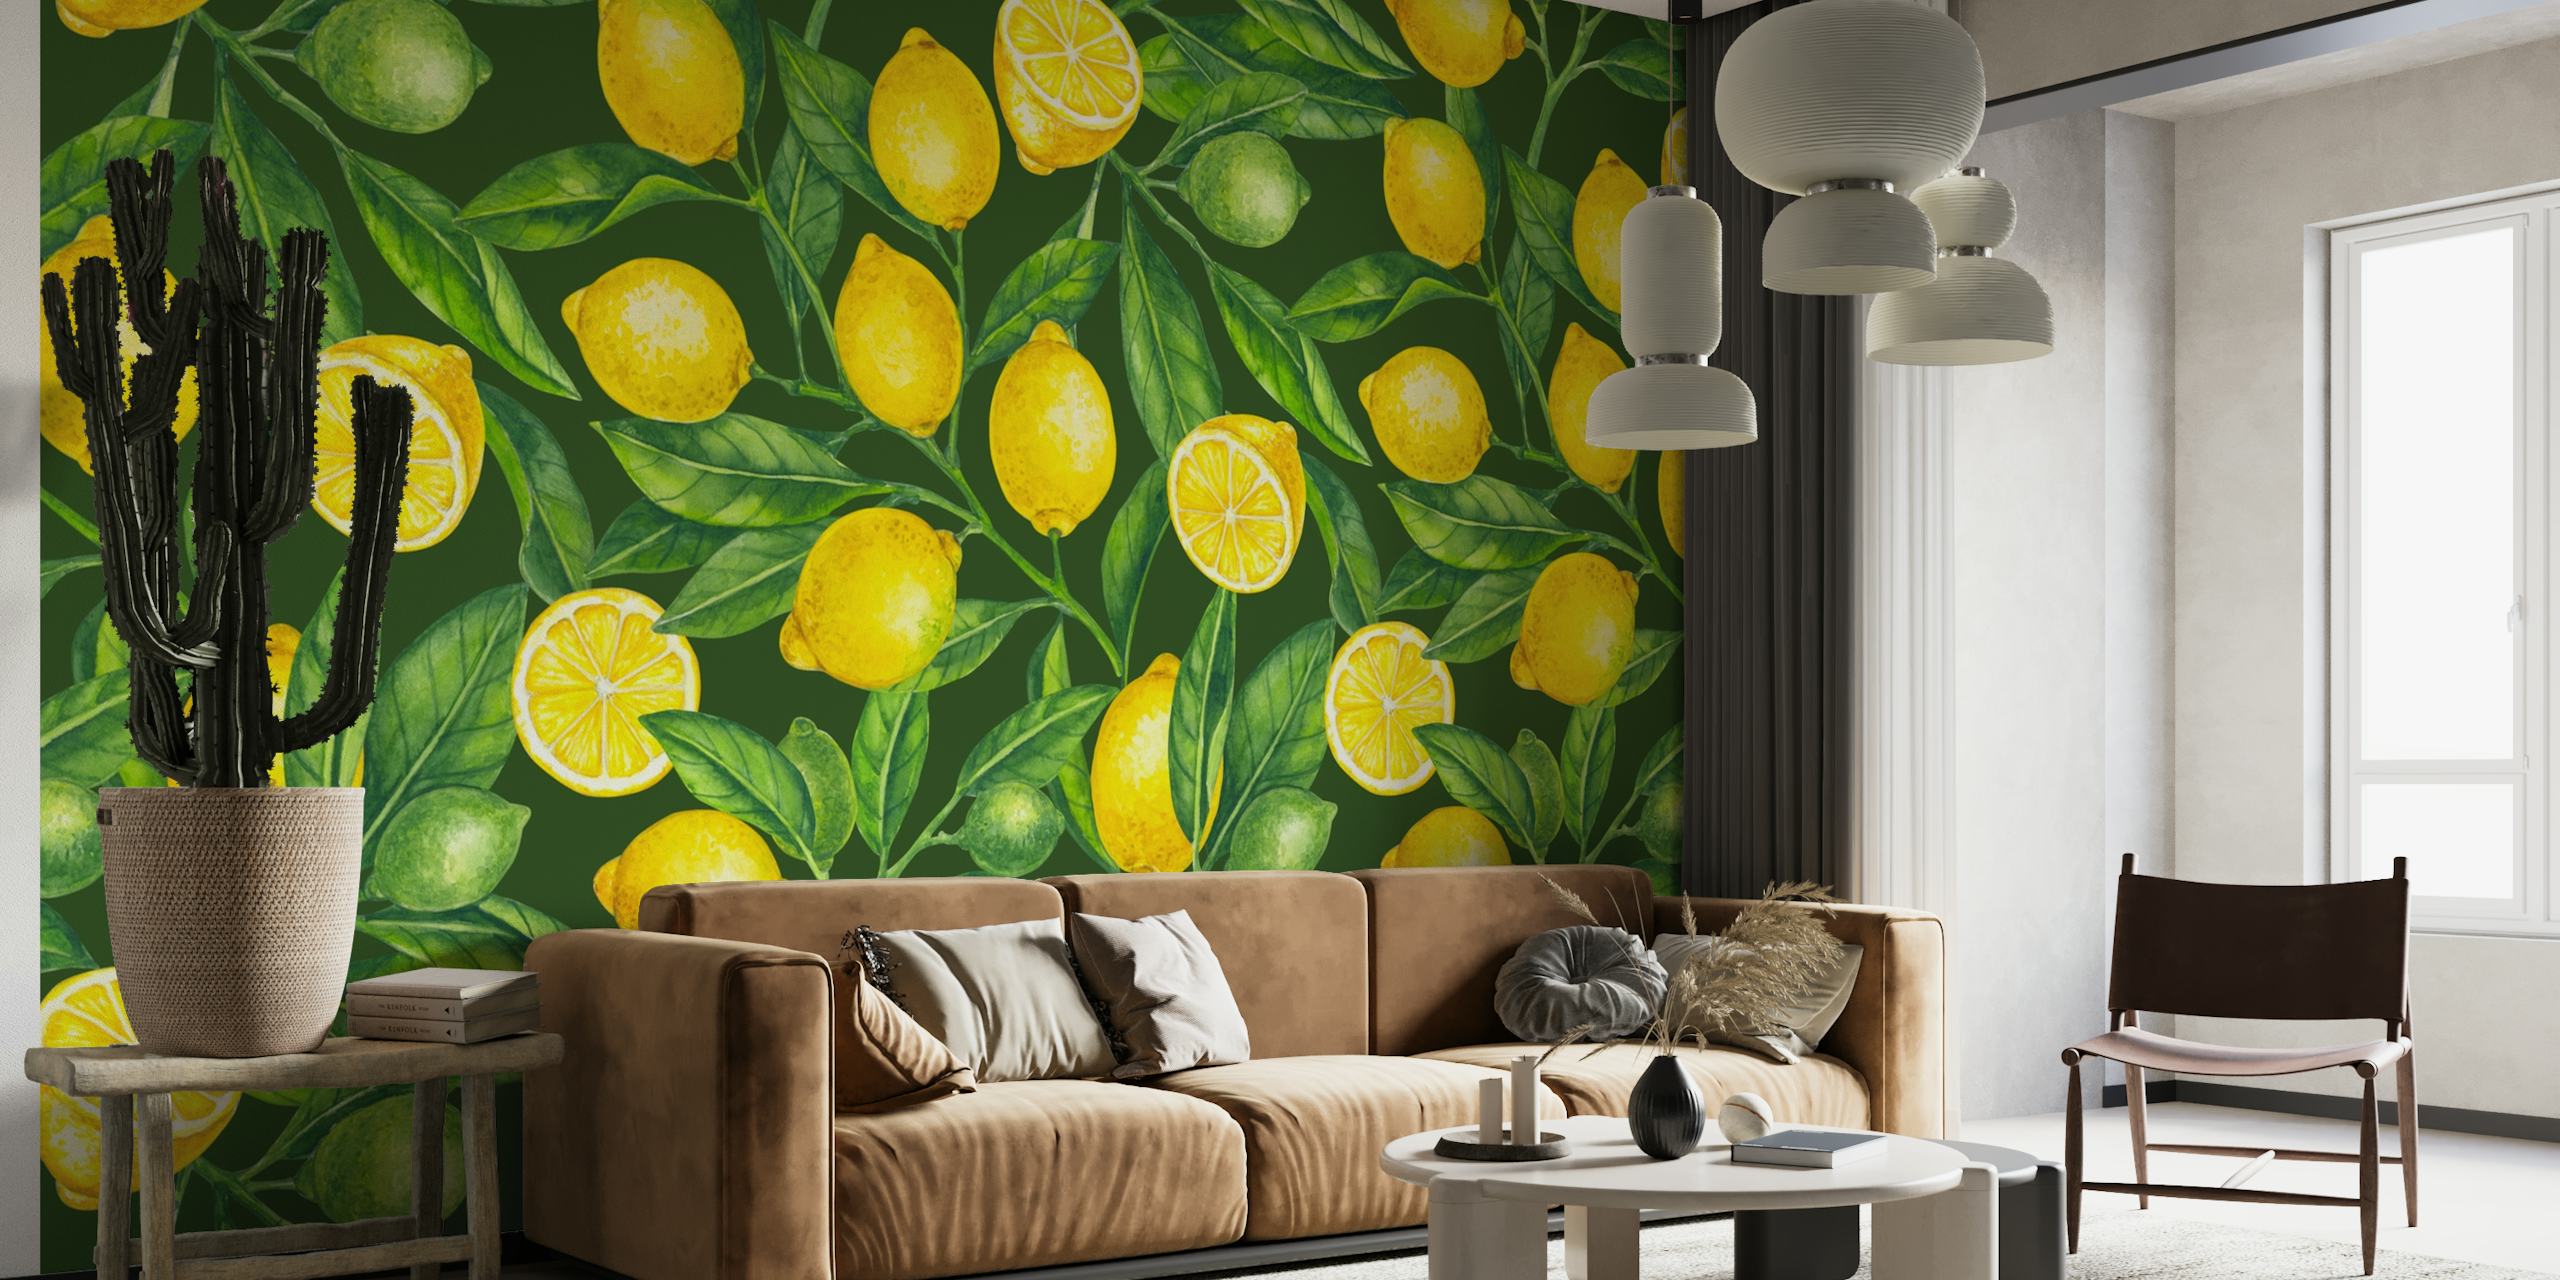 Fotomural vinílico de parede de ramos de limão fresco com folhas verdes exuberantes e padrão de limões amarelos brilhantes